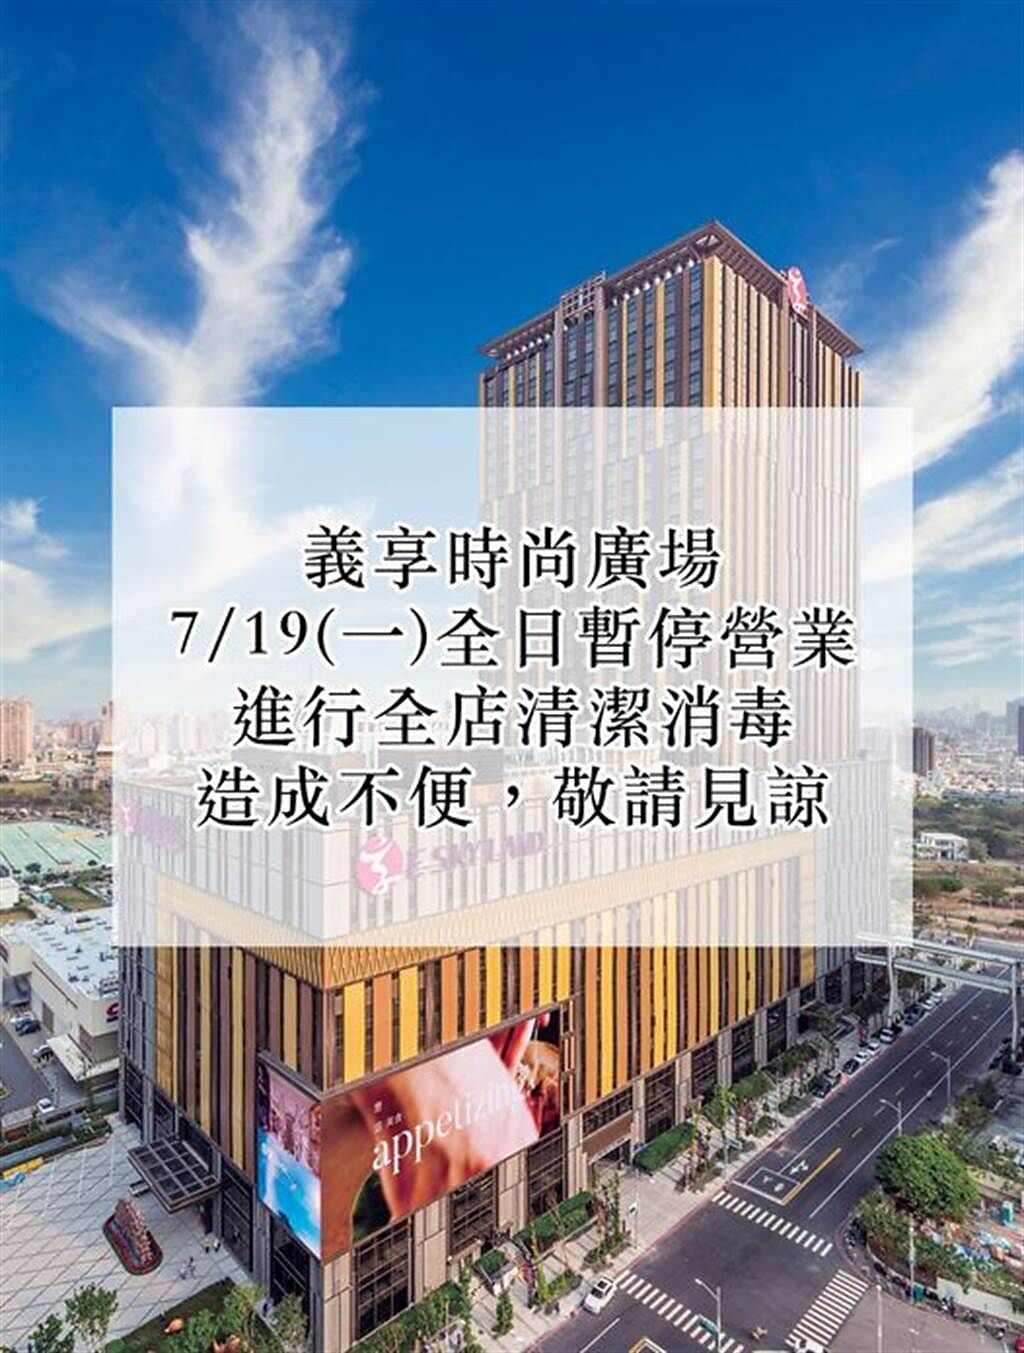 高雄義享時尚廣場在臉書上宣布今日停業1天進行清消作業。（圖/取自義享時尚廣場臉書粉絲專頁）